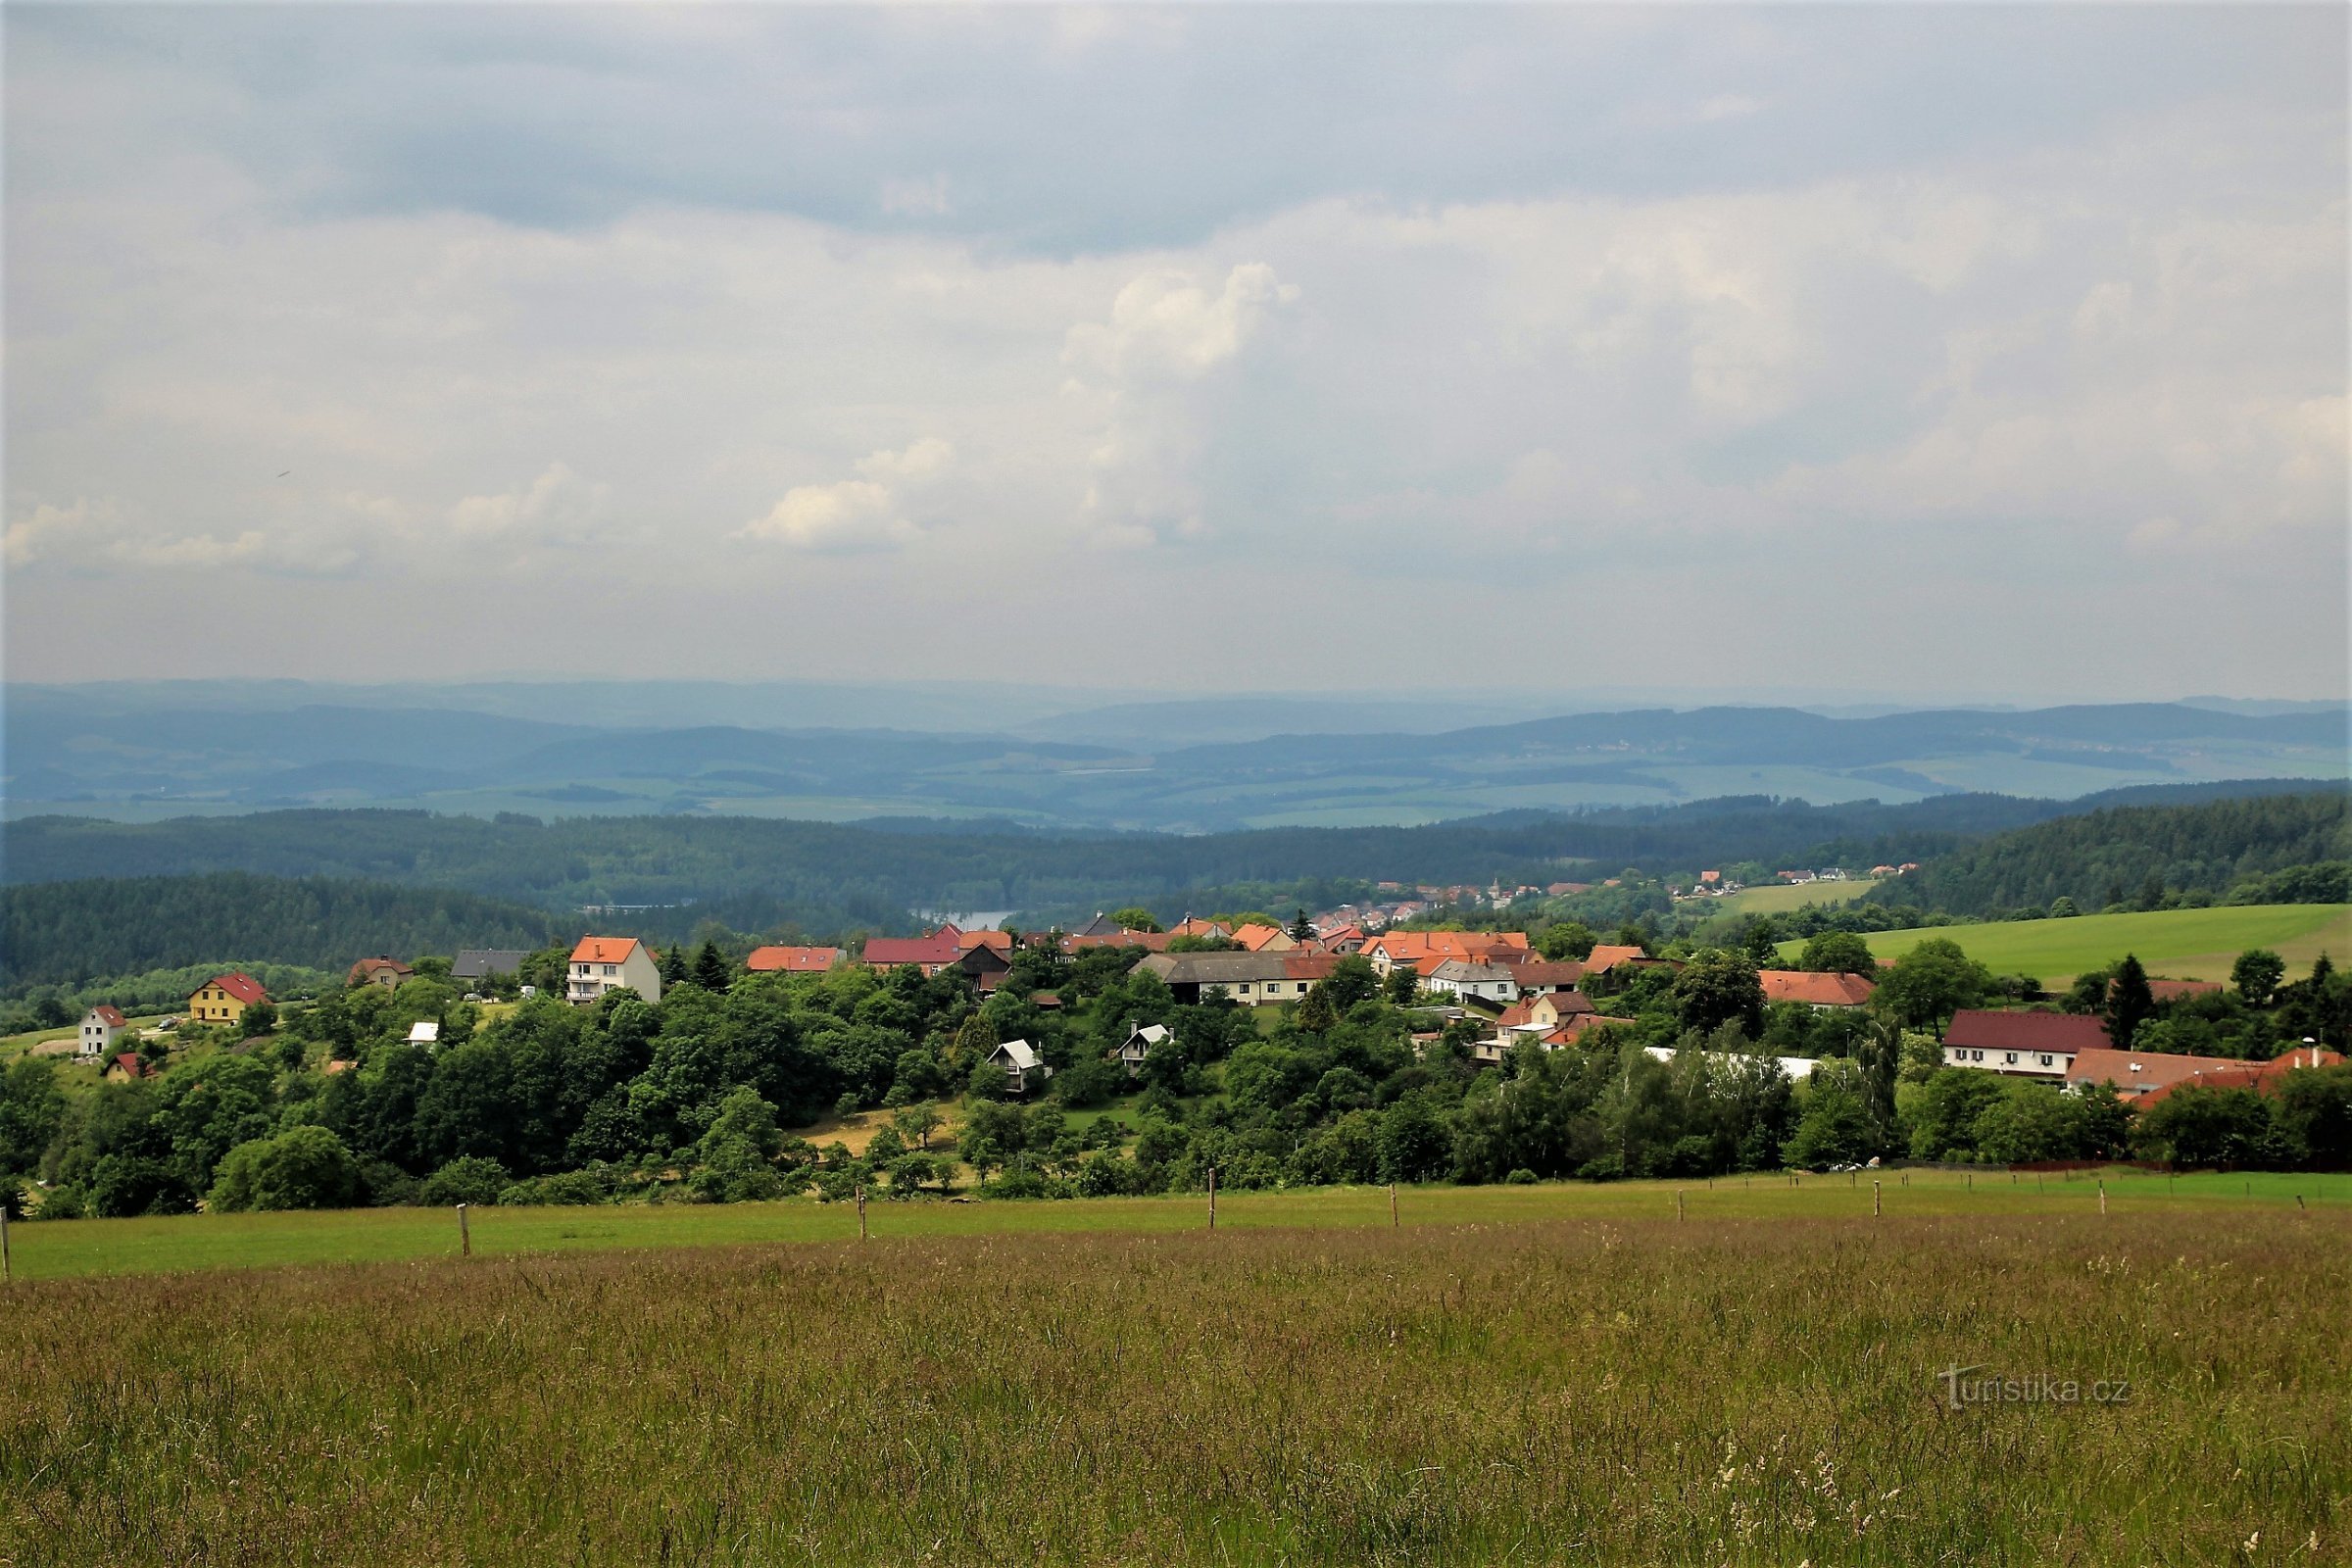 Au-dessous du point de vue se trouve le village pittoresque de Velenov. En dessous se trouve un large bassin vers Bosko